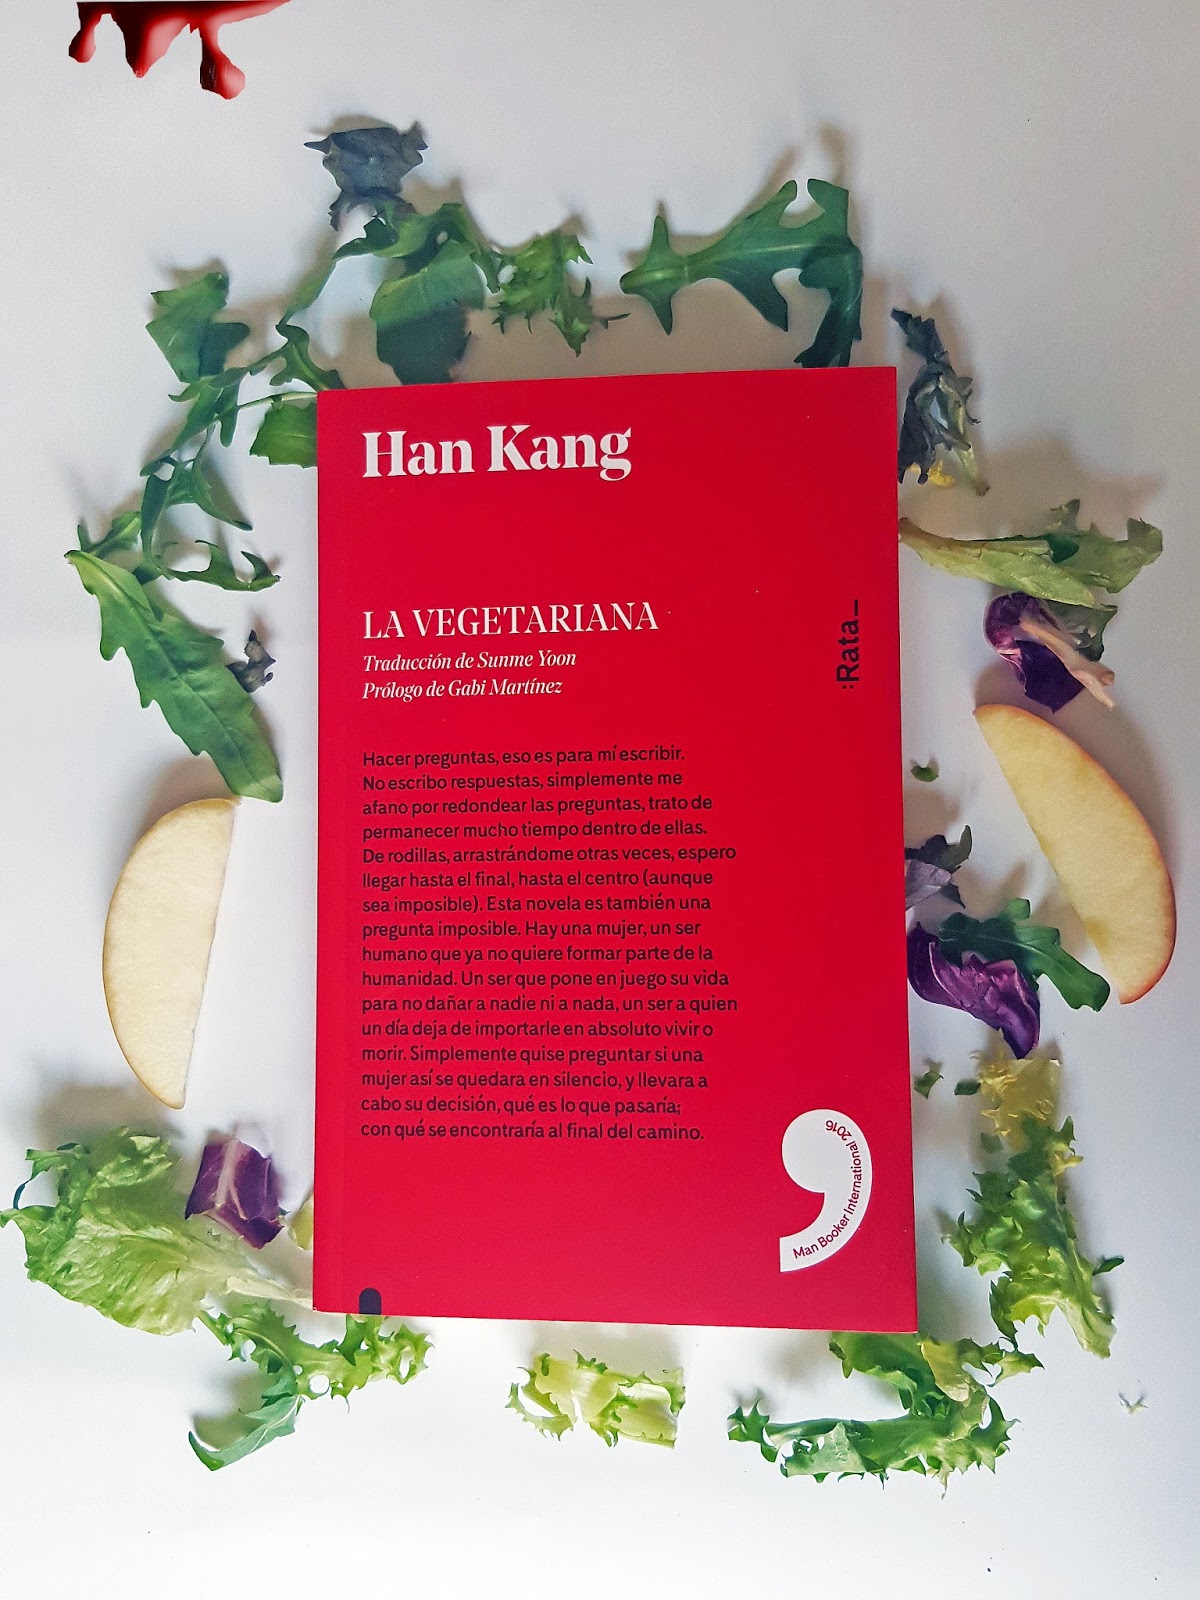 Lo que leo lo cuento: La vegetariana (Han Kang)